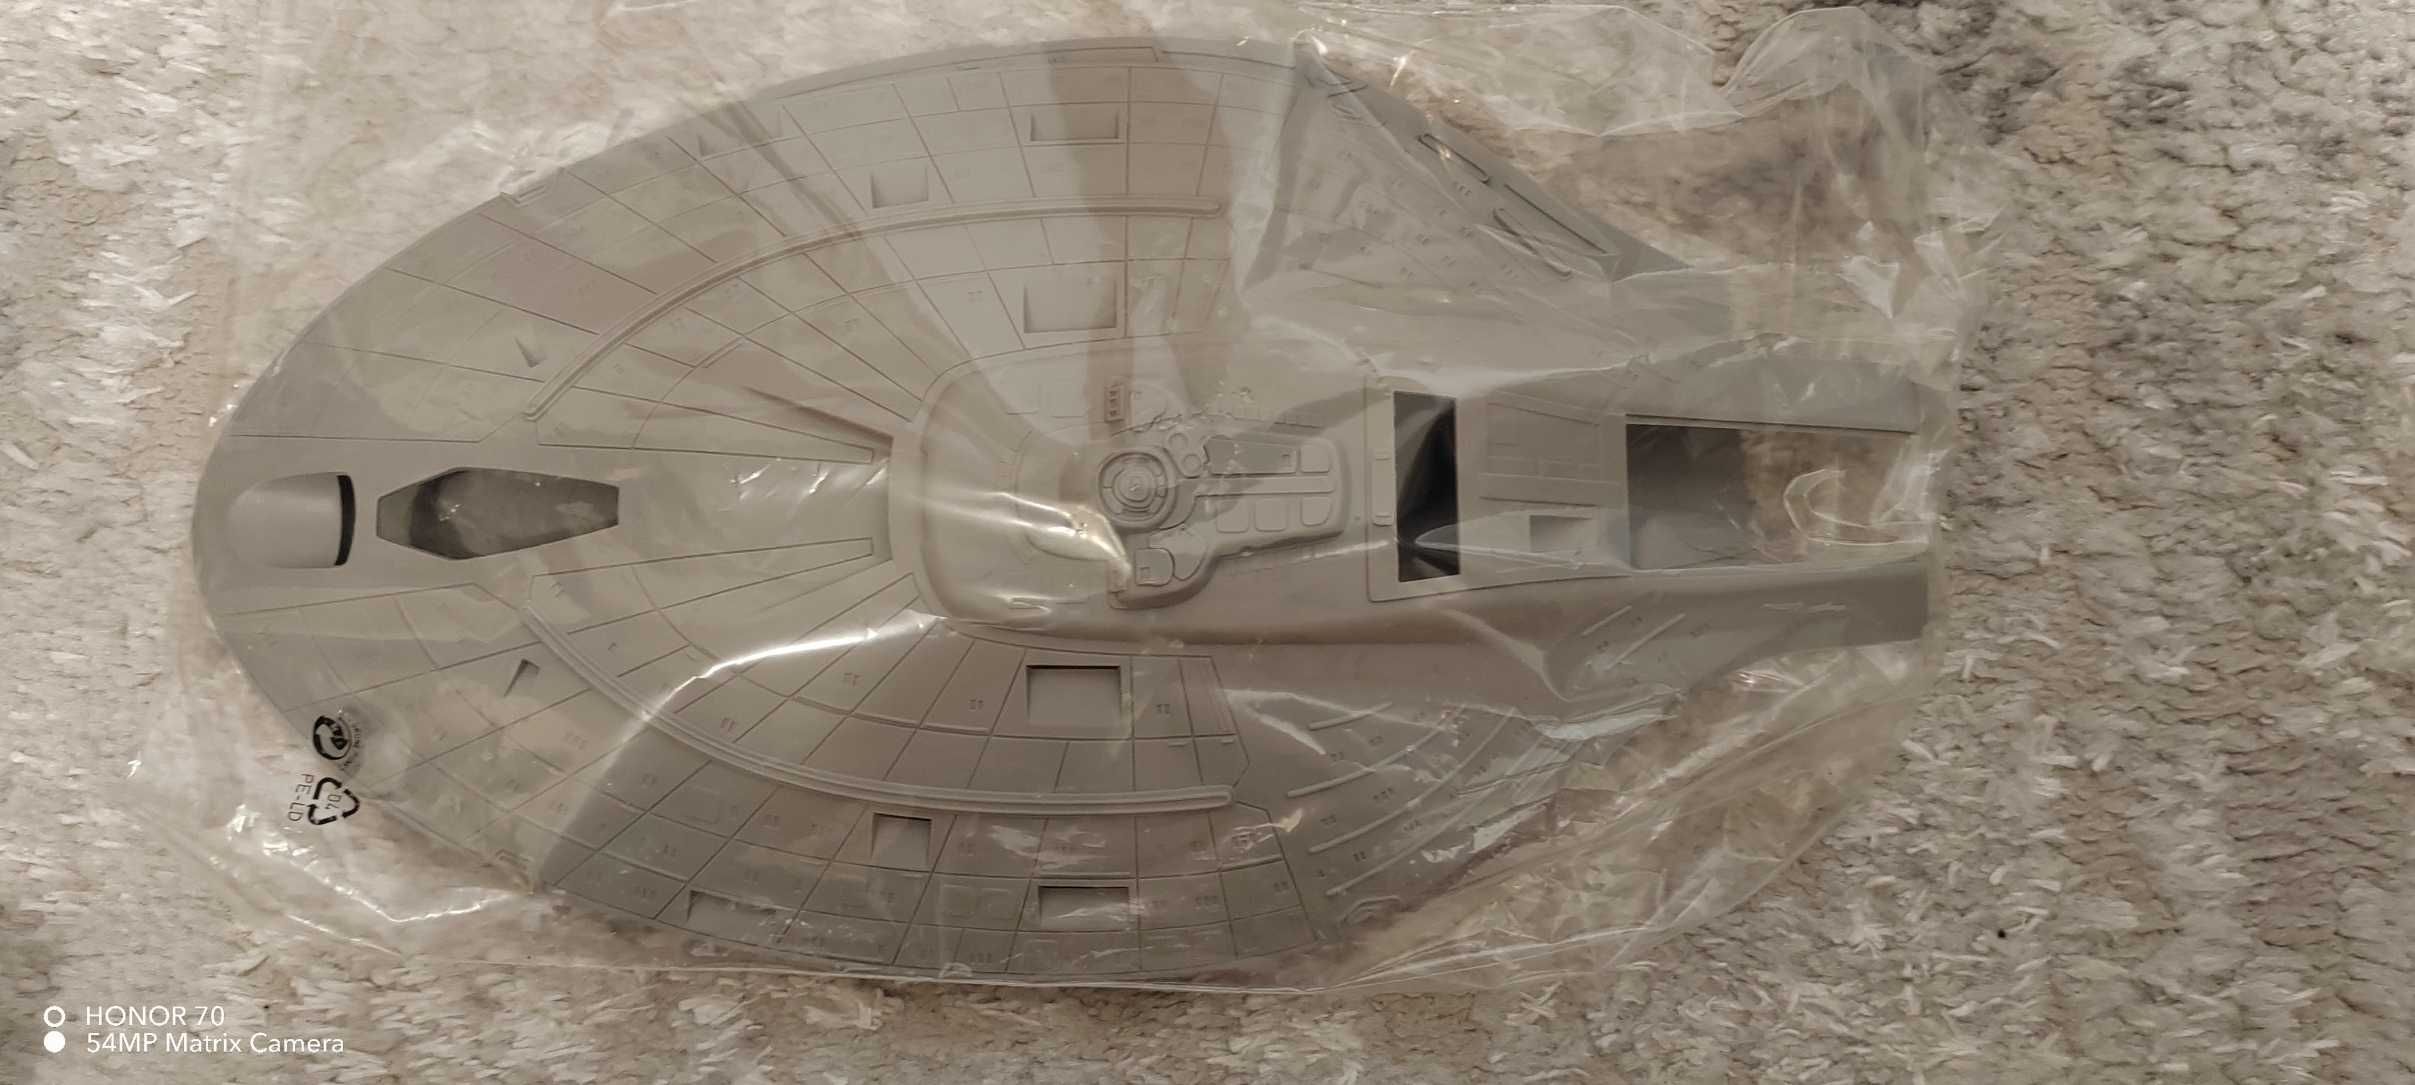 Model statku z filmu Star Trek U.S.S.Voyager  Revell 1:670